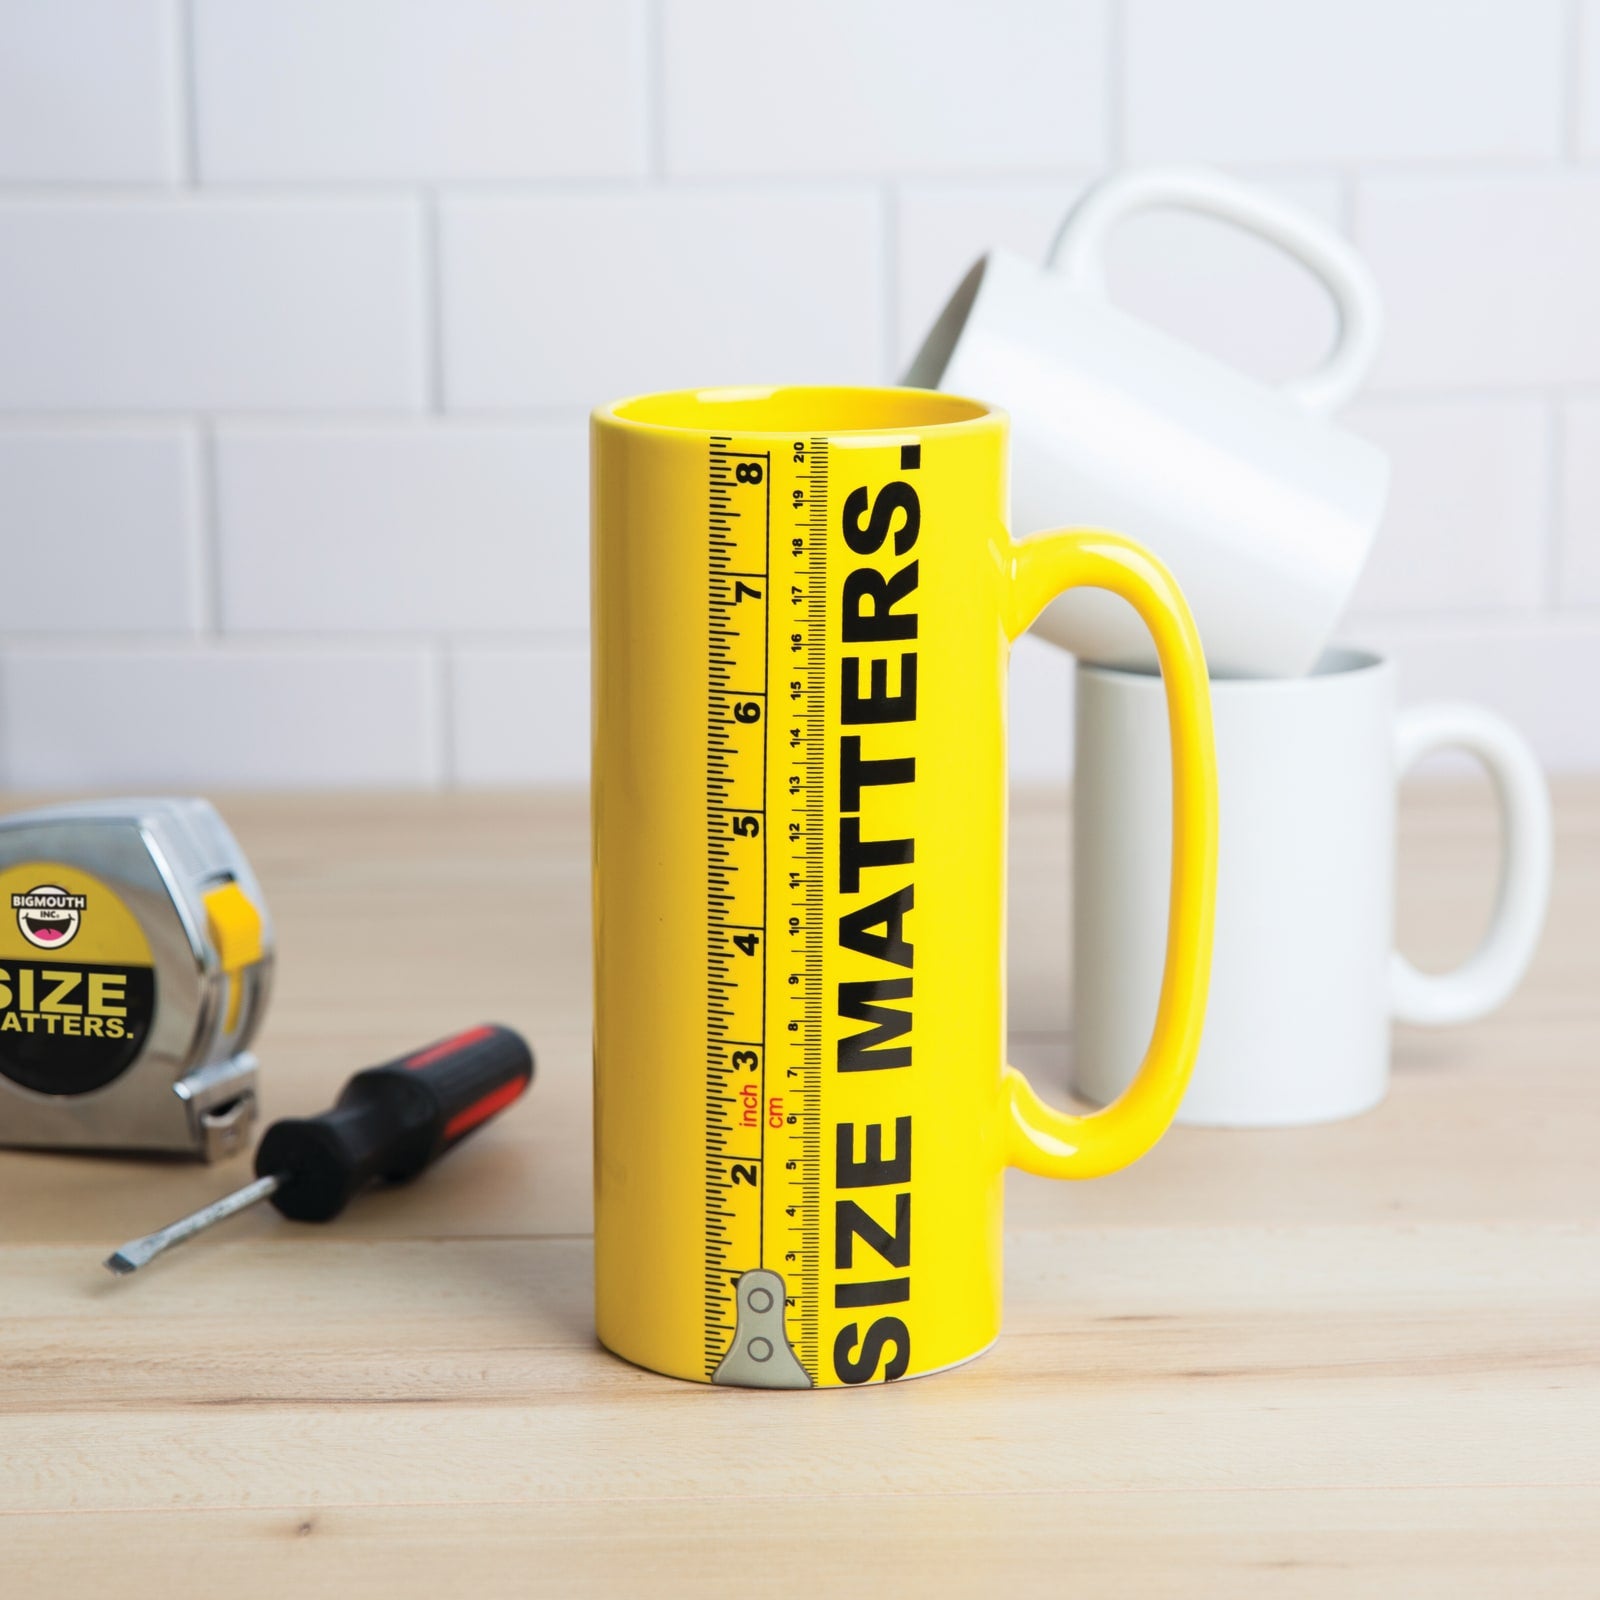 The Size Matters Coffee Mug